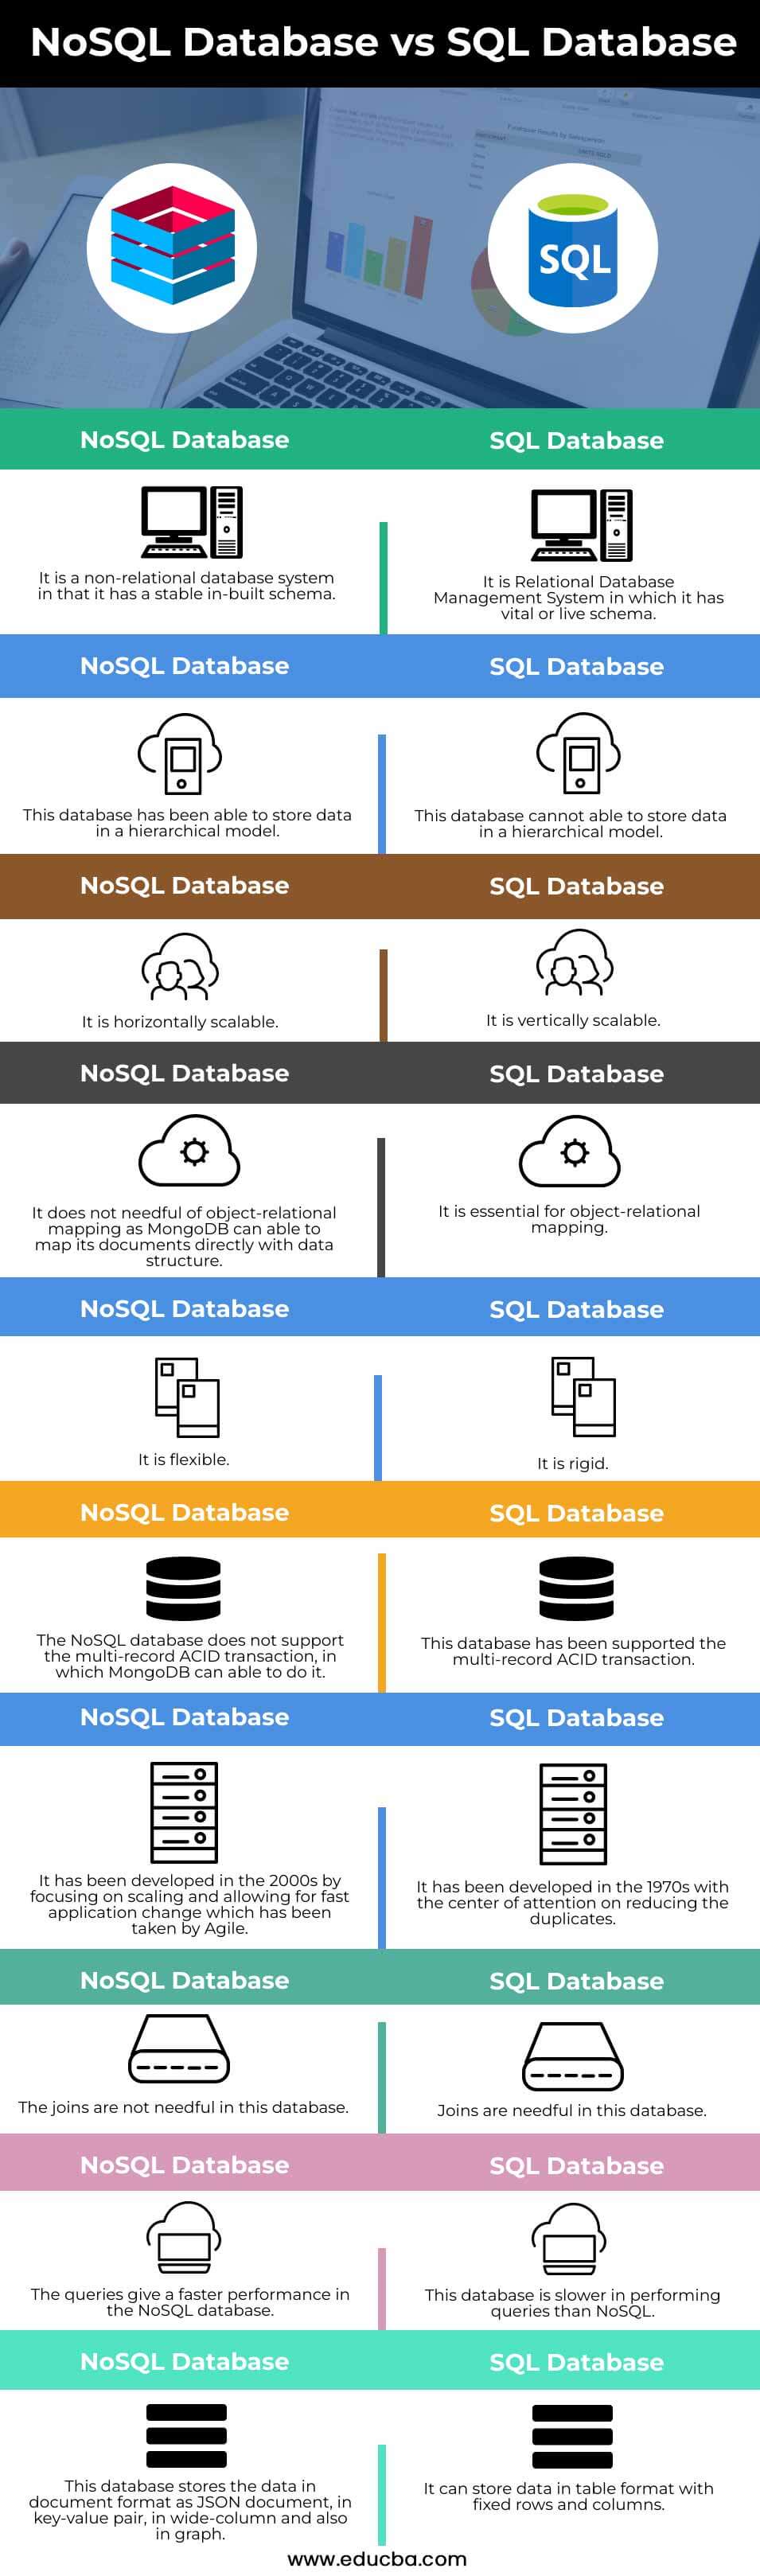 NoSQL-Database-vs-SQL-Database-info